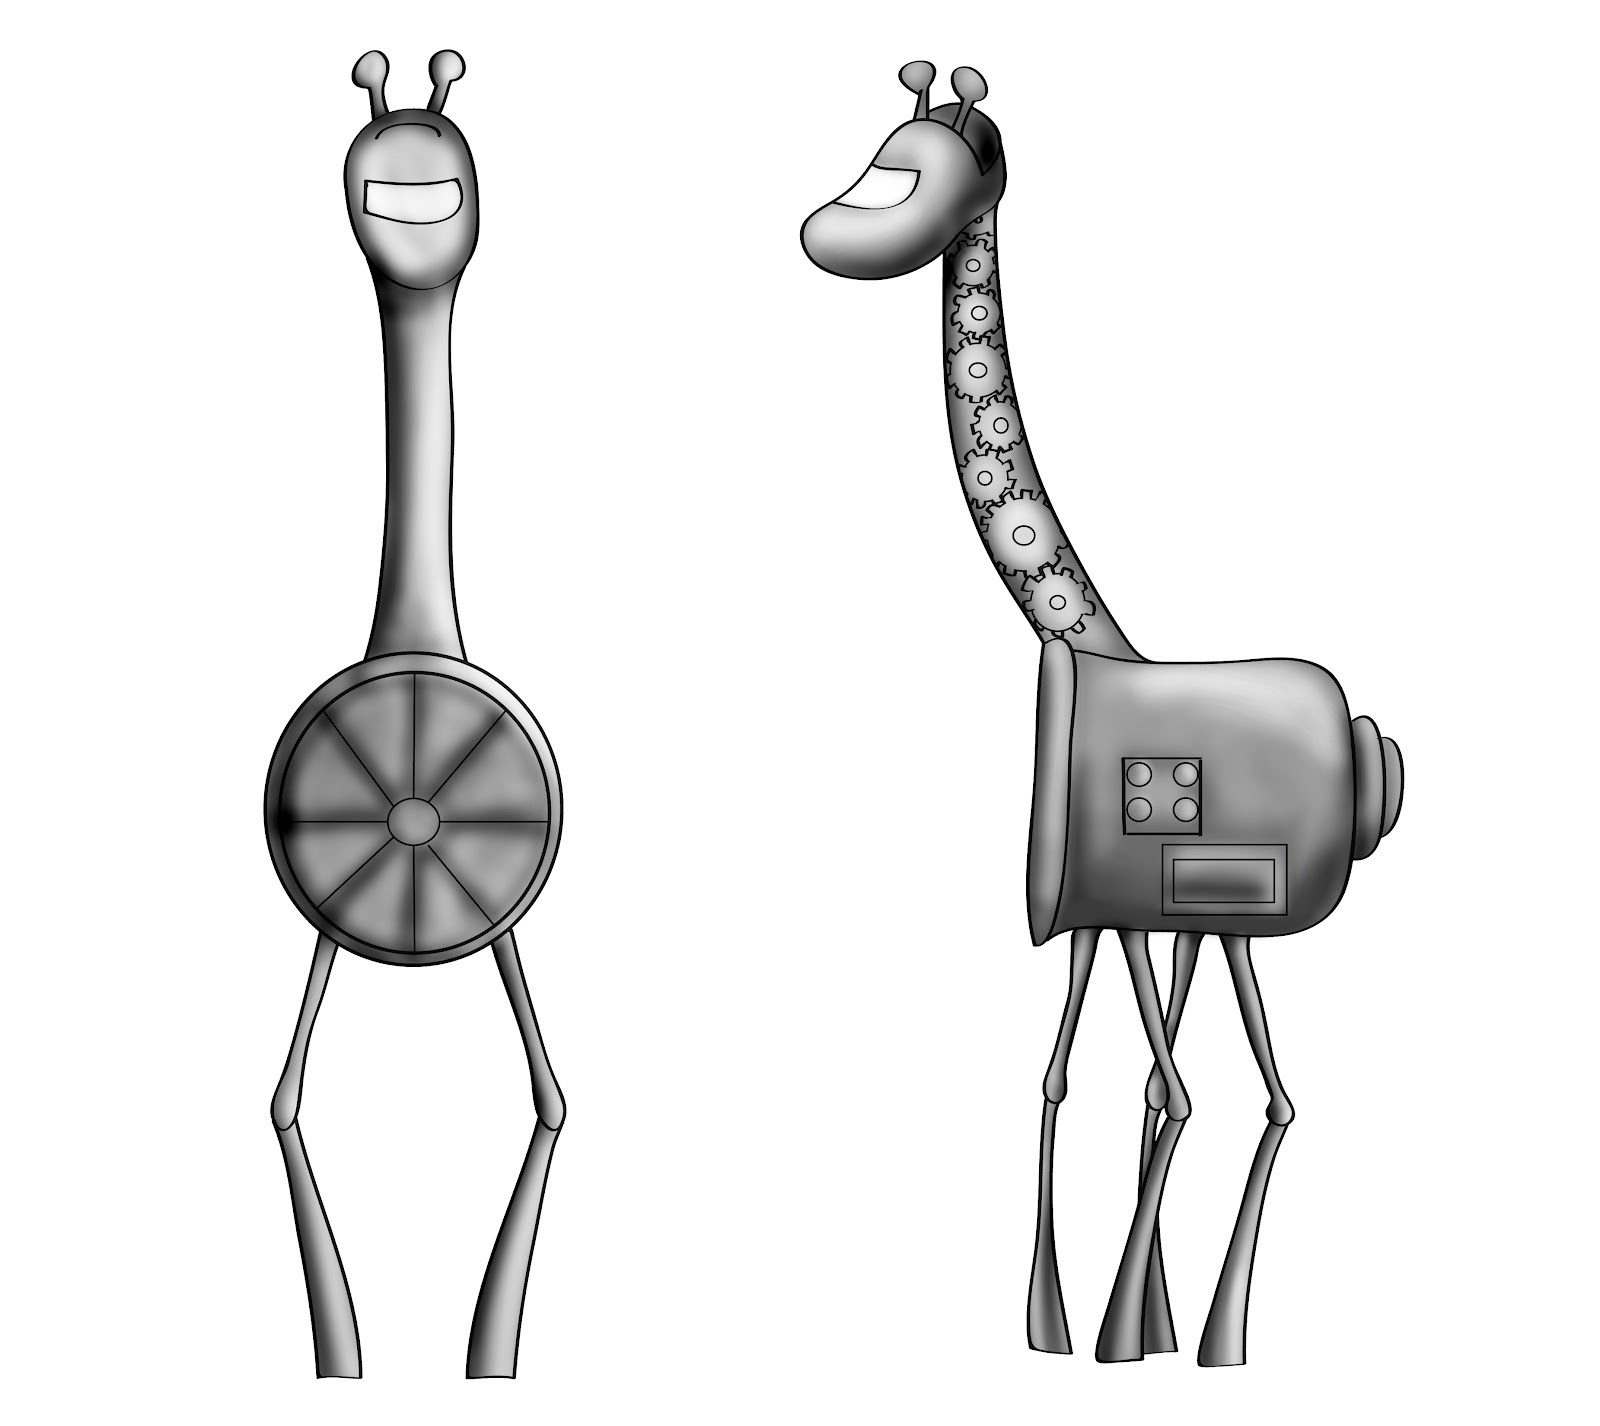 Does Art: Giraffe Robot